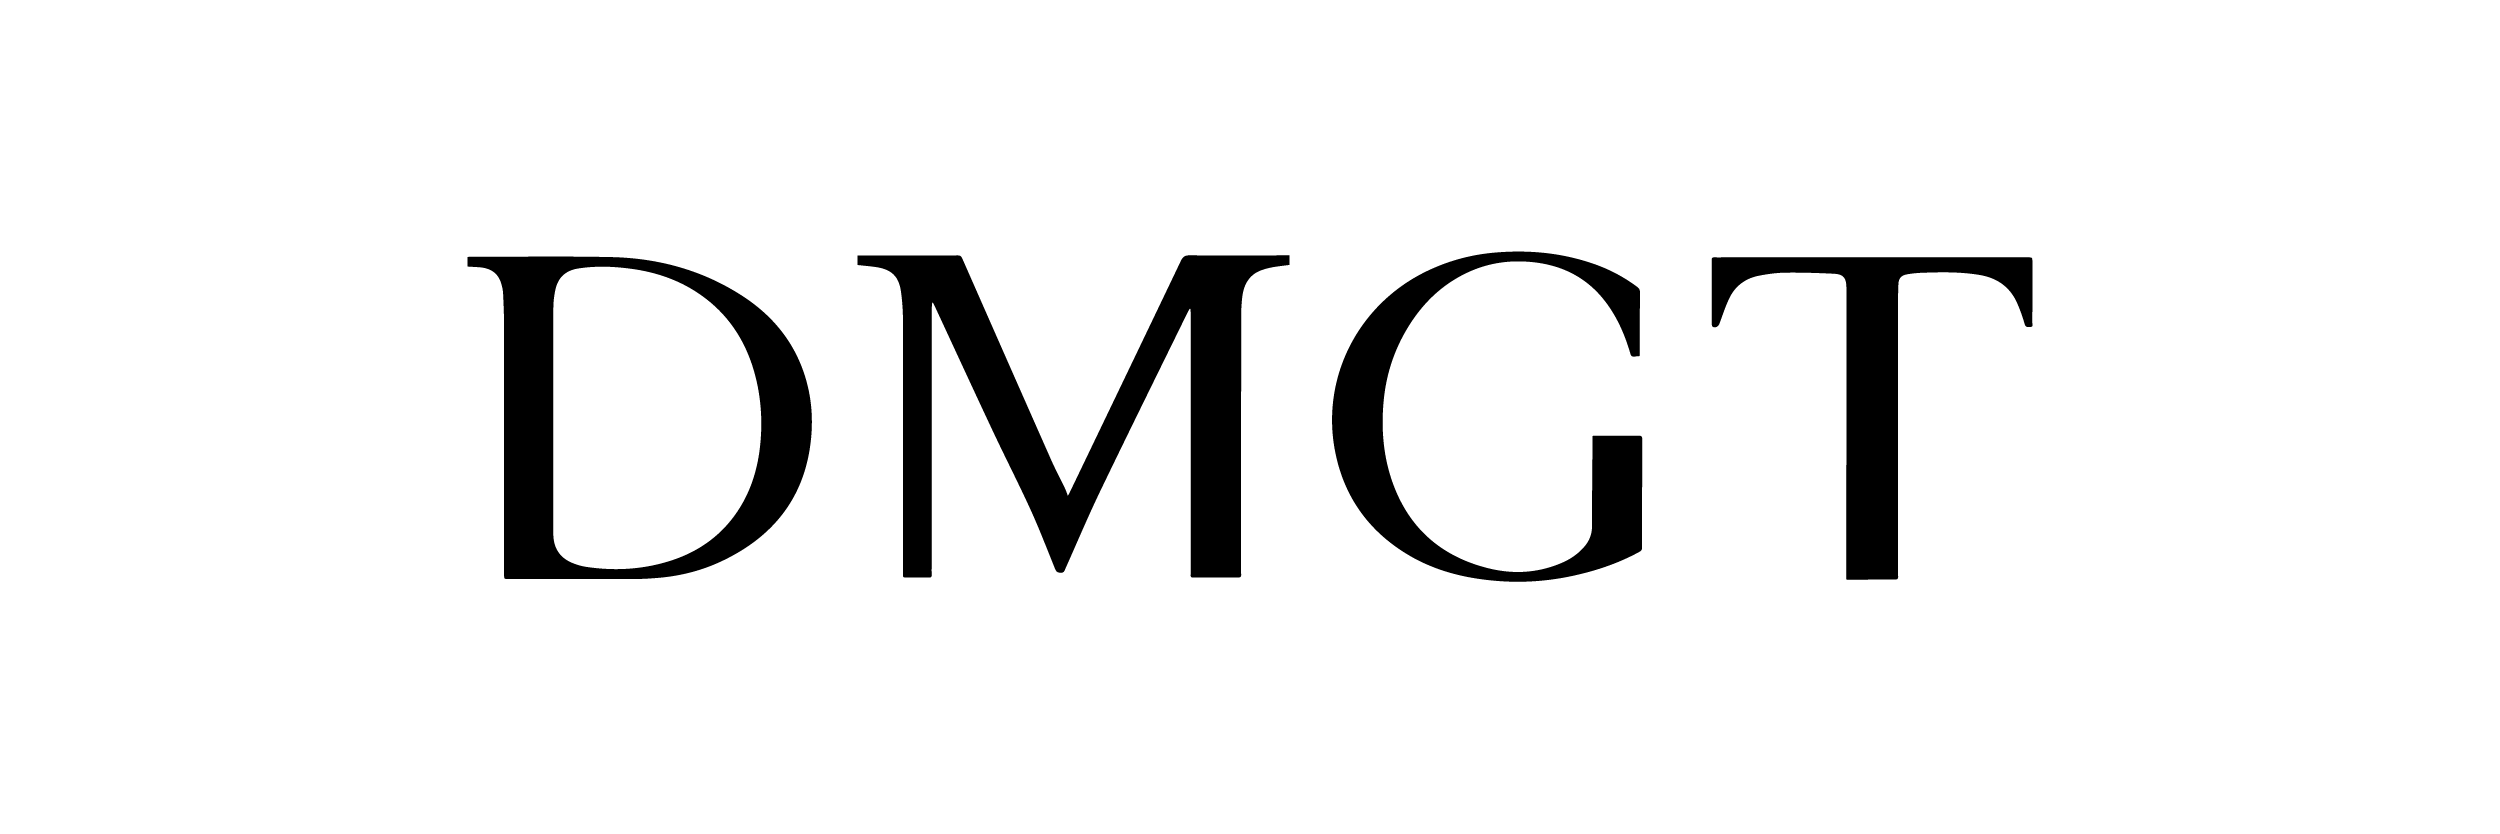 DMGT logo